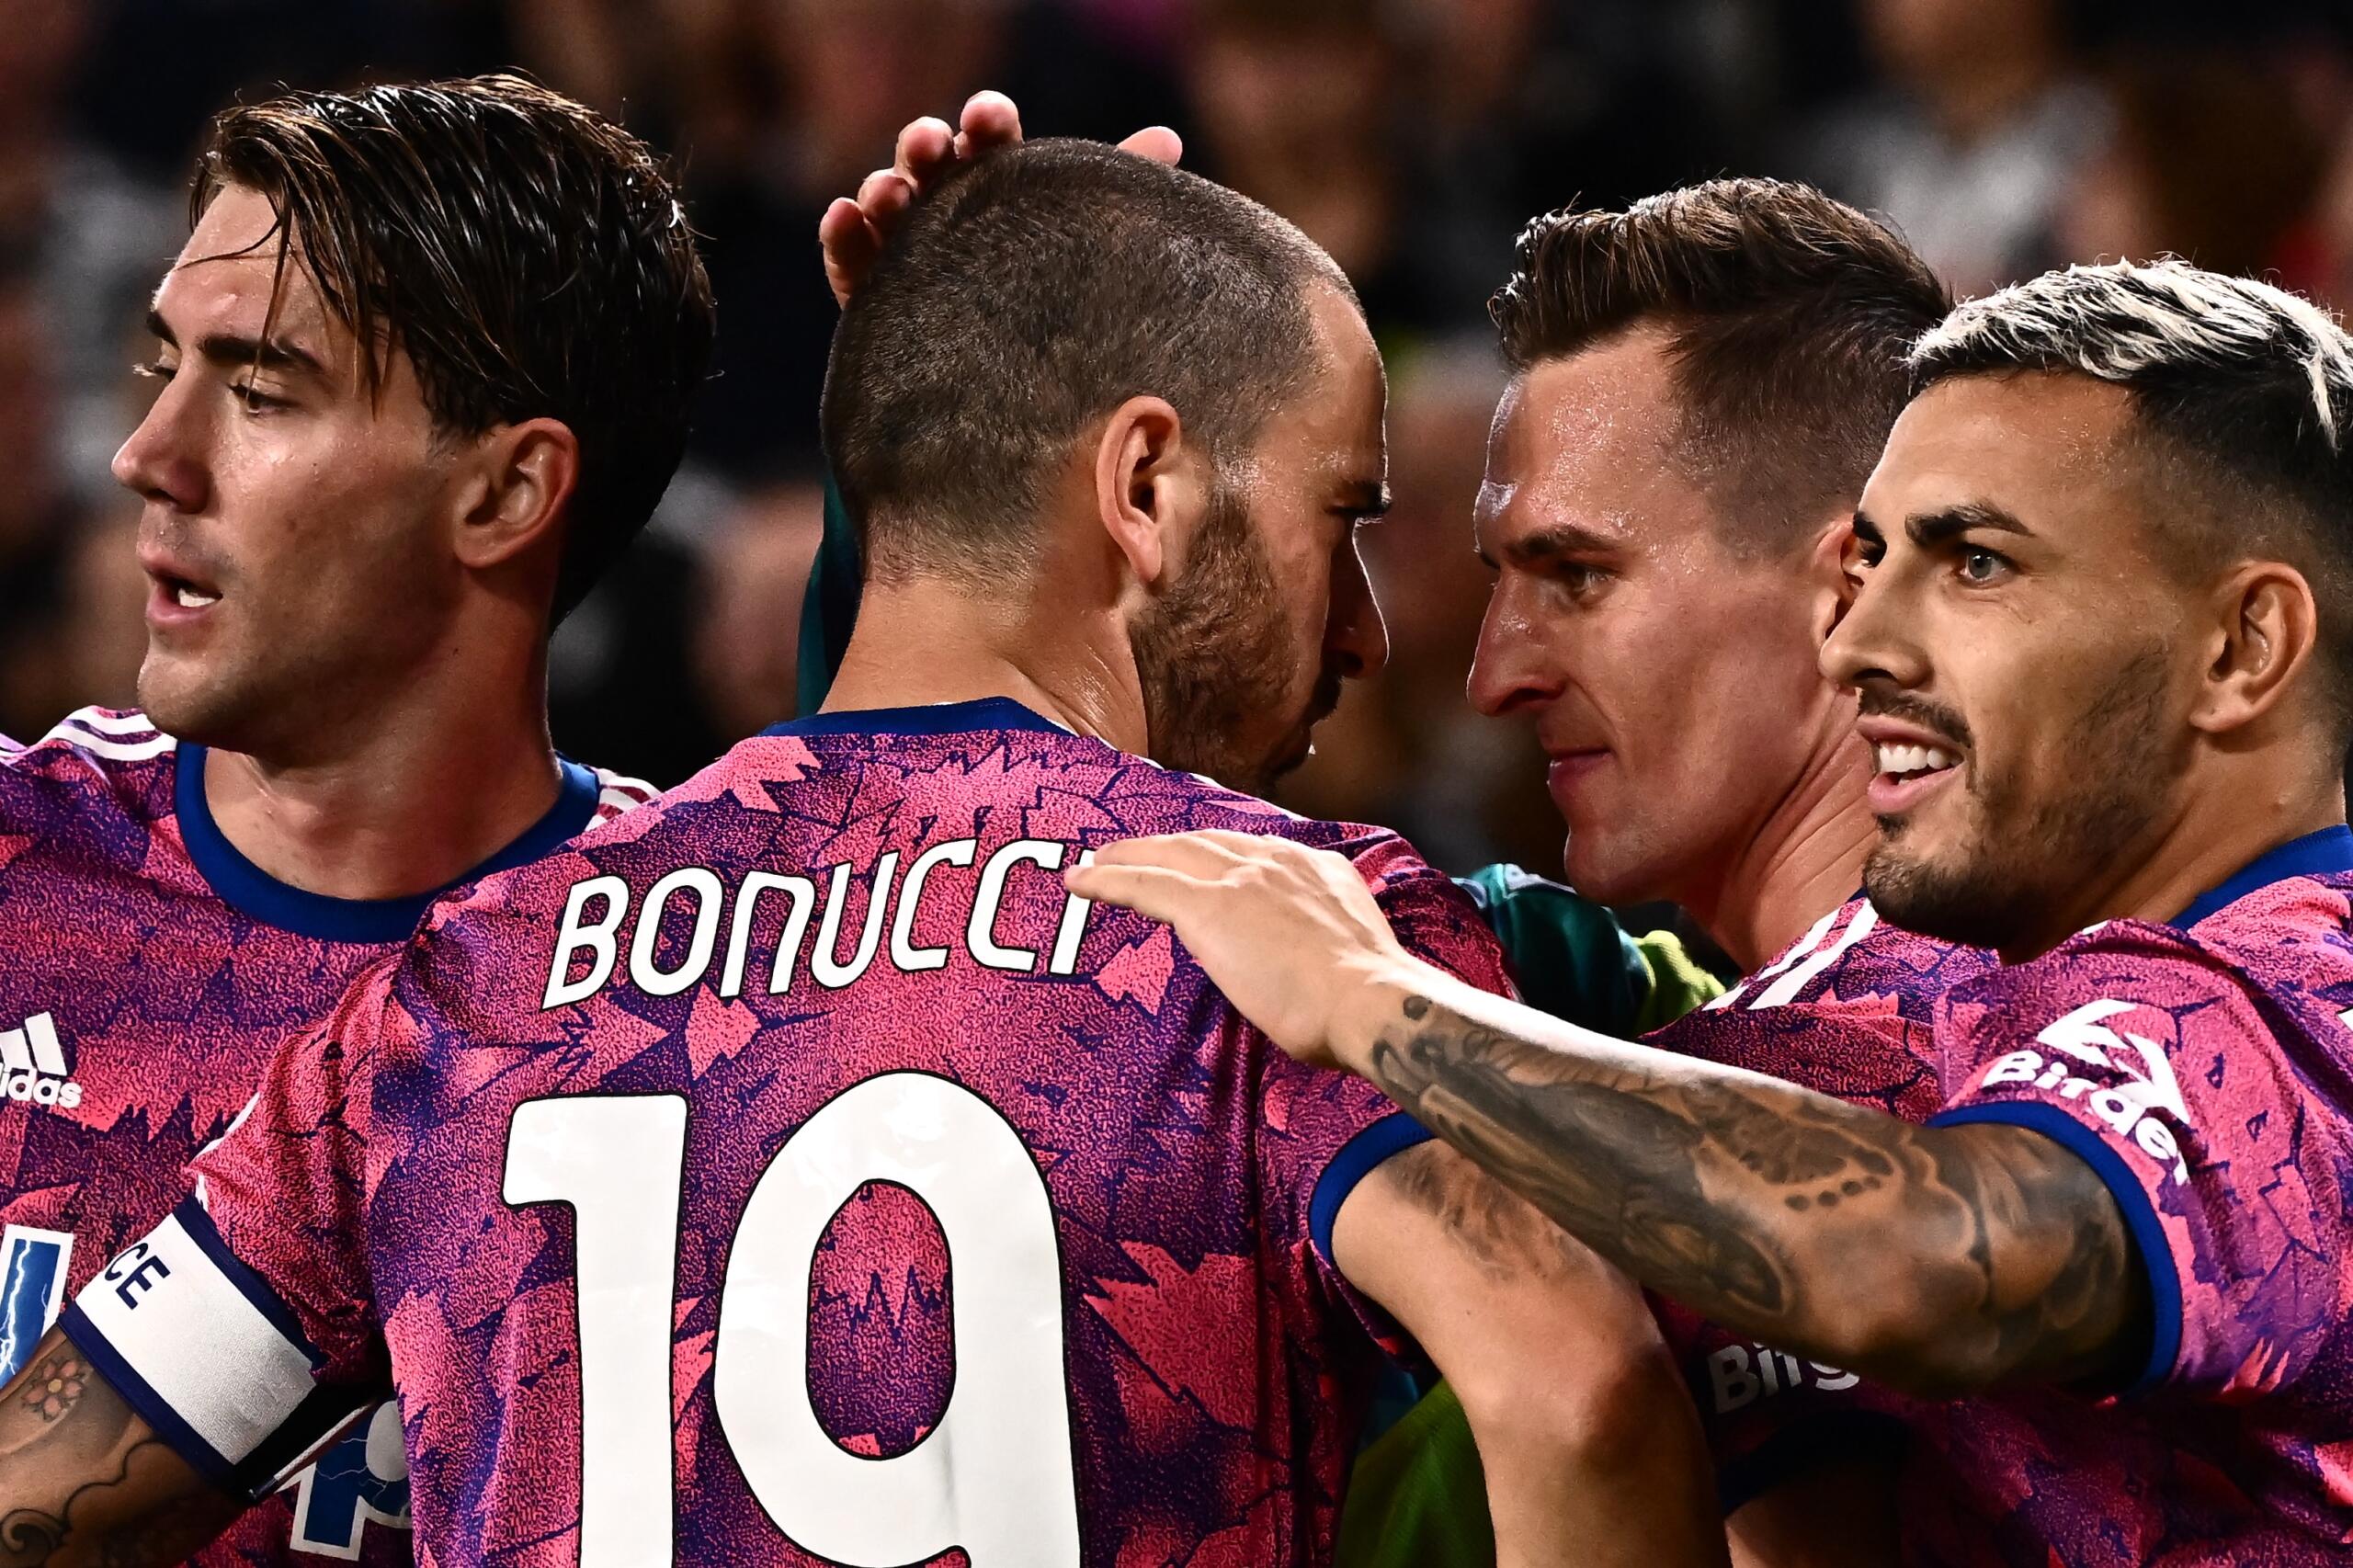 Juventus Bologna